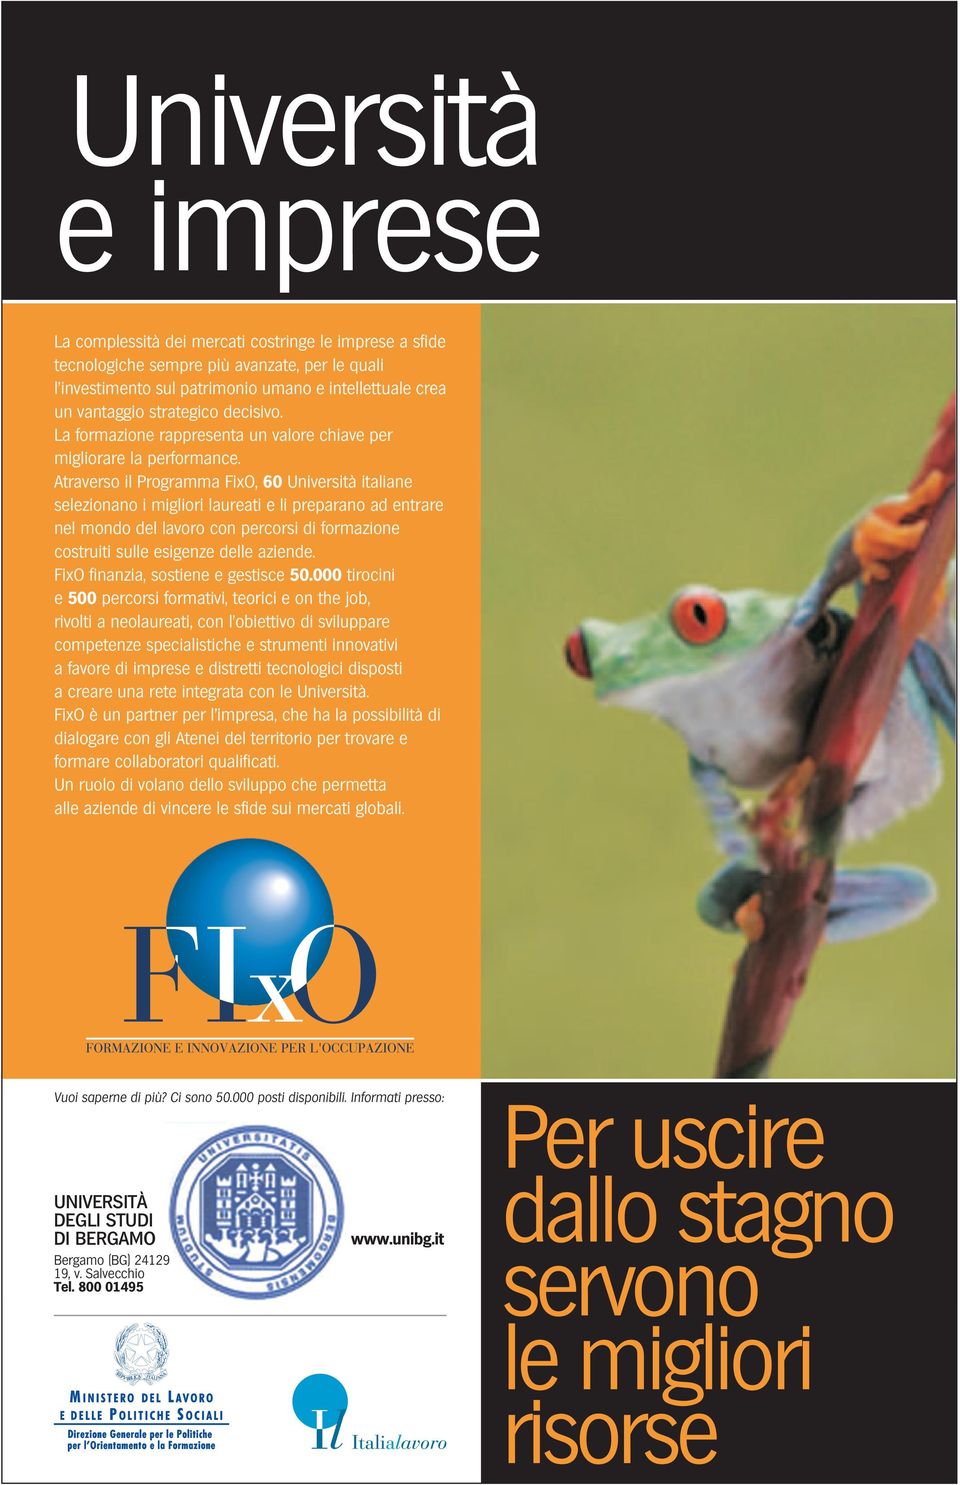 Atraverso il Programma FixO, 60 Università italiane selezionano i migliori laureati e li preparano ad entrare nel mondo del lavoro con percorsi di formazione costruiti sulle esigenze delle aziende.